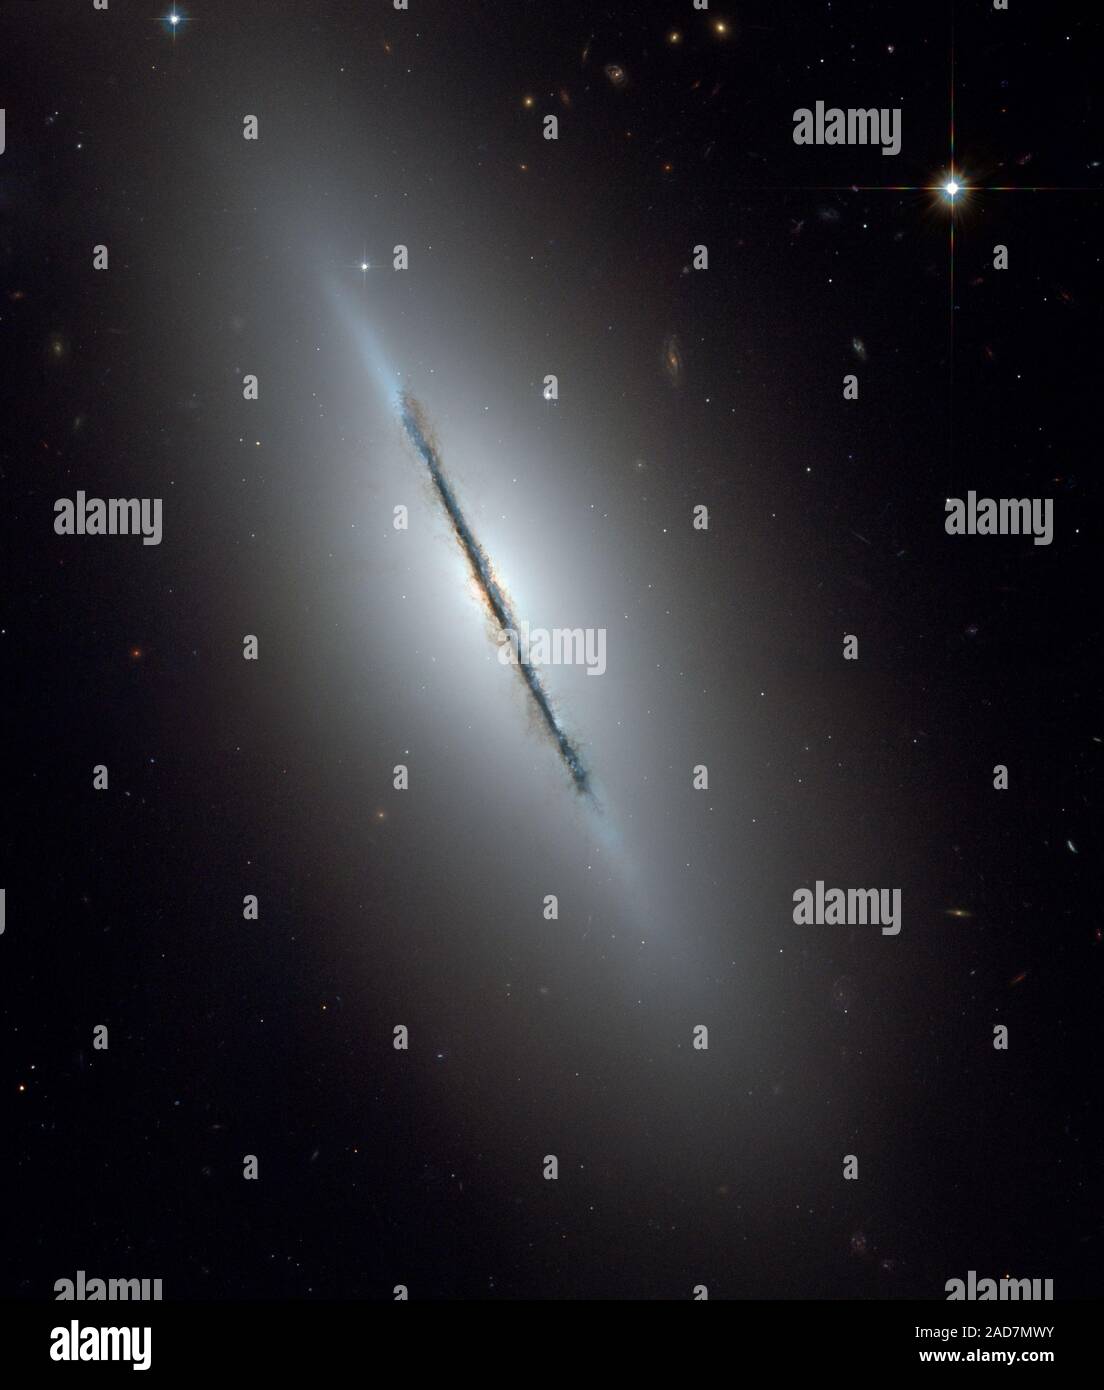 Dies ist ein einzigartiges NASA-Hubble-Weltraumteleskop Blick auf die Galaxie NGC 5866 gekippt fast Kante zu unserer Sichtlinie. Scharfe Hubbles Vision offenbart eine scharfe Staubband Division der Galaxie in zwei Hälften. Das Bild zeigt die Struktur der Galaxie: Eine subtile, rötlich Ausbuchtung, die einen hellen Kern, eine blaue Scheibe der Sterne, die parallel zu den Staub weg läuft, und eine transparente äußere Halo. Einige schwache, wispy Spuren von Staub kann gesehen werden weg von der Scheibe der Galaxie, die sich in der Ausbuchtung und inneren Halo der Galaxie. Der äußere Halo ist übersät mit zahlreichen gravitativ gebundenen Clus Stockfoto